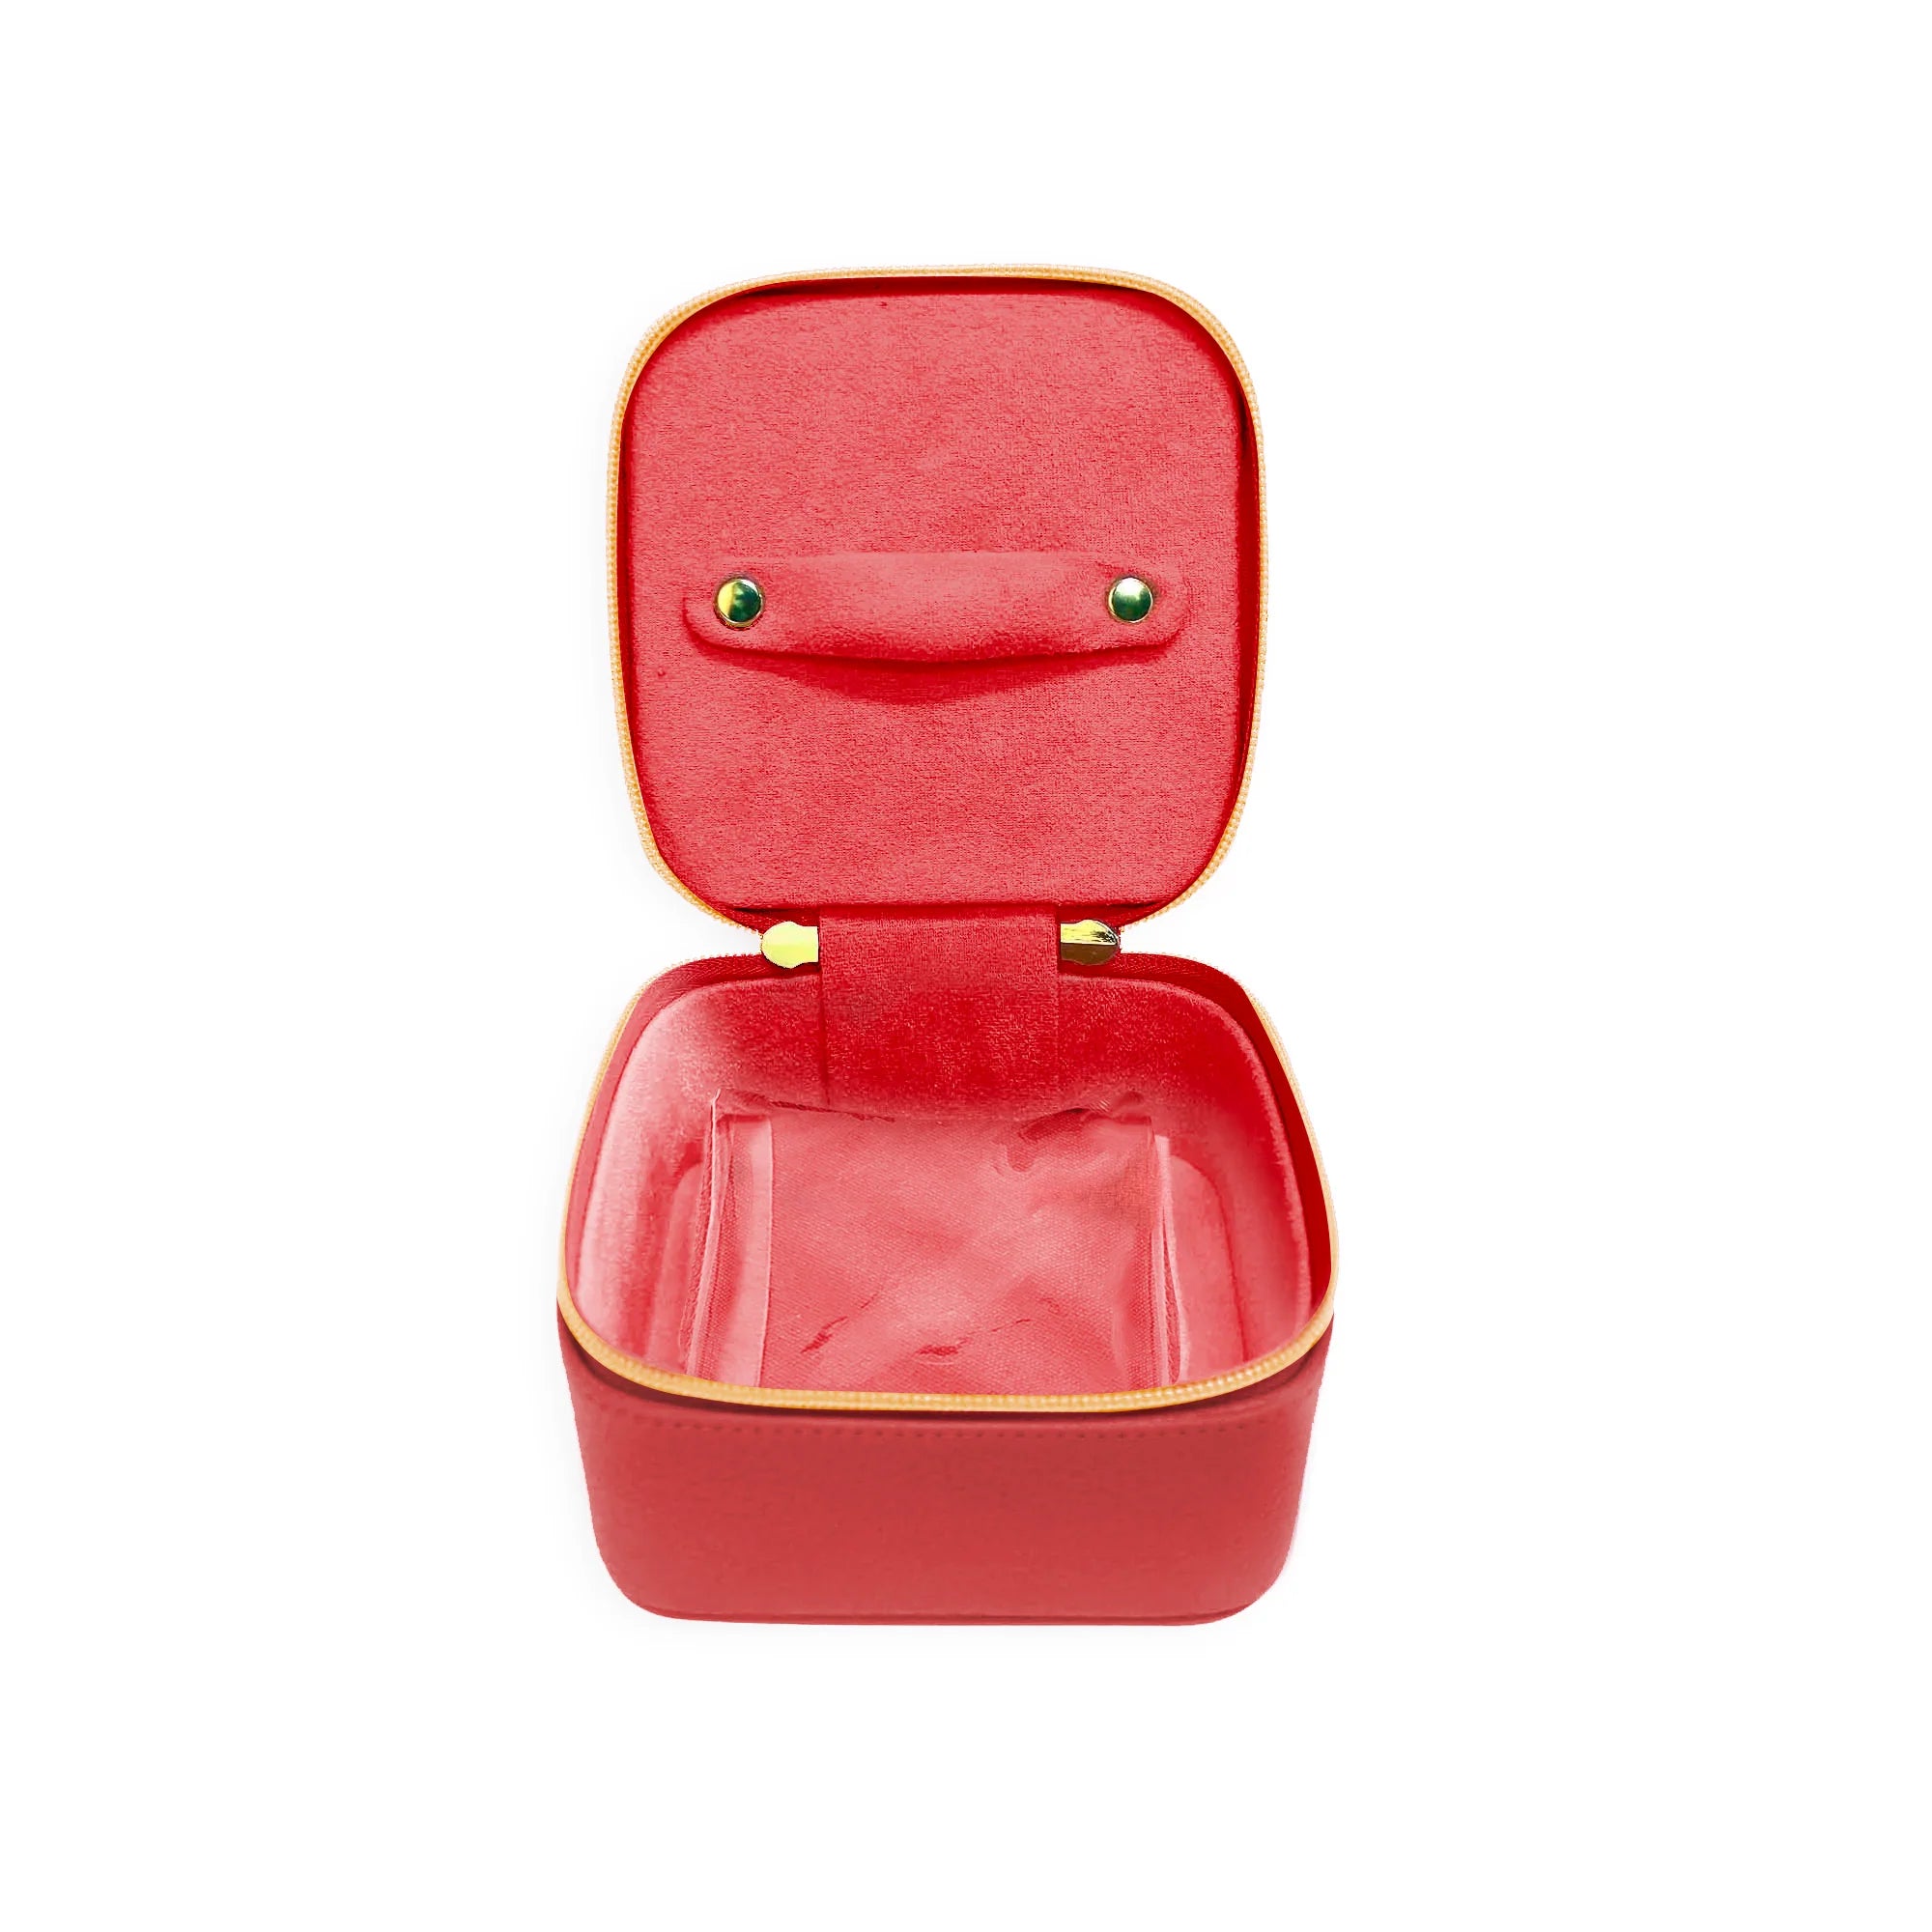 Luxe Pop Jewelry Cube in Watermelon